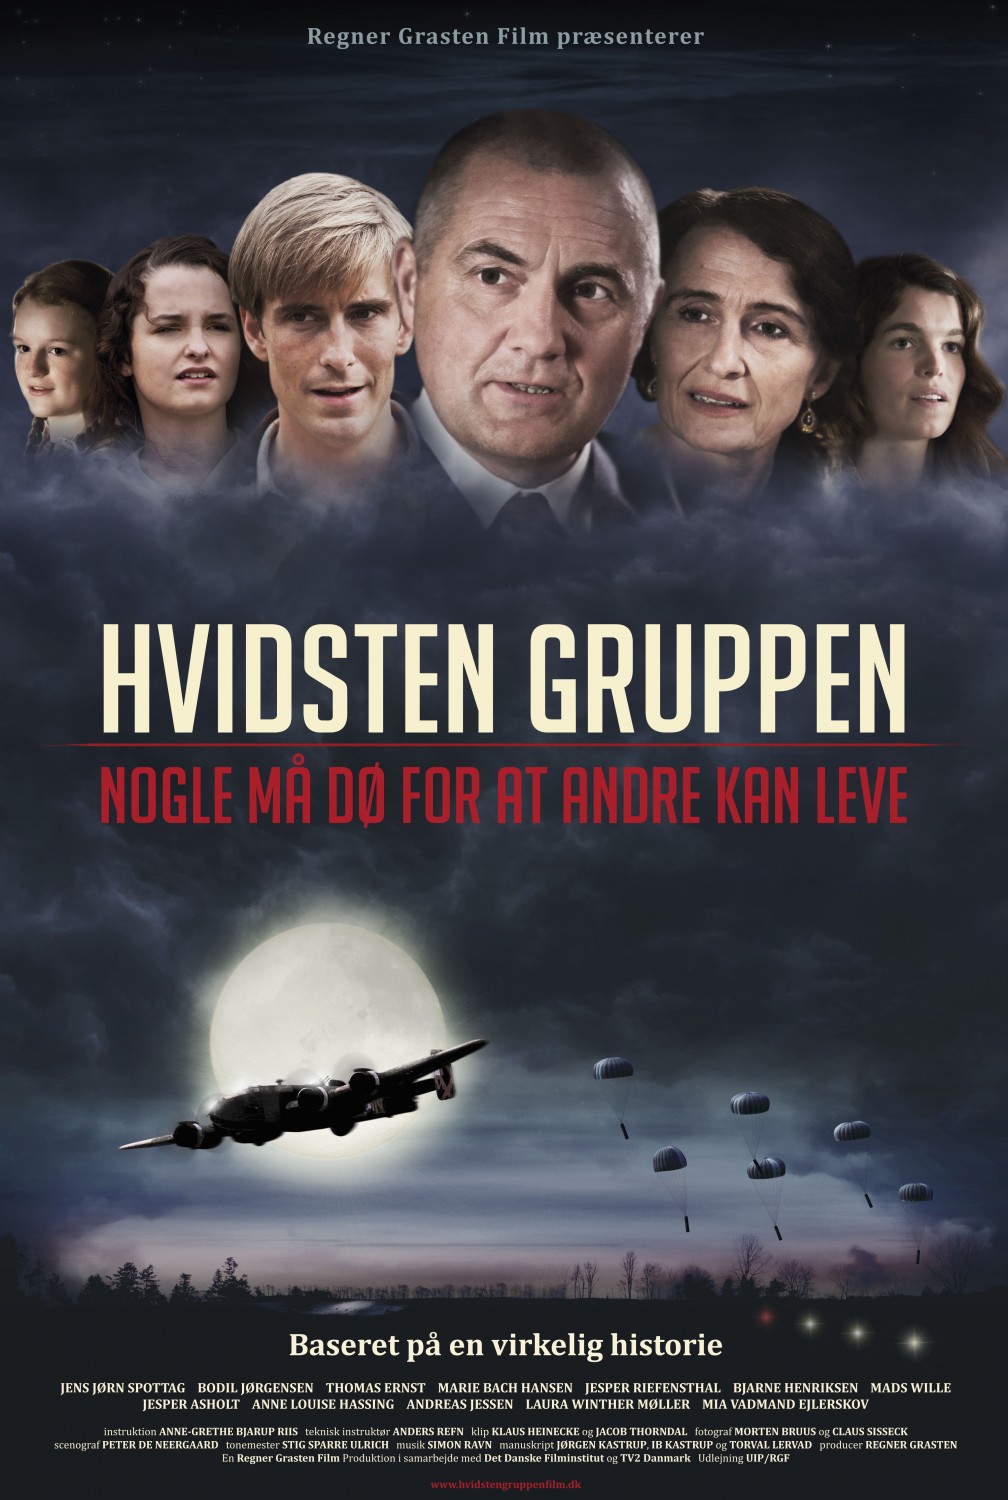 Extra Large Movie Poster Image for Hvidsten gruppen 